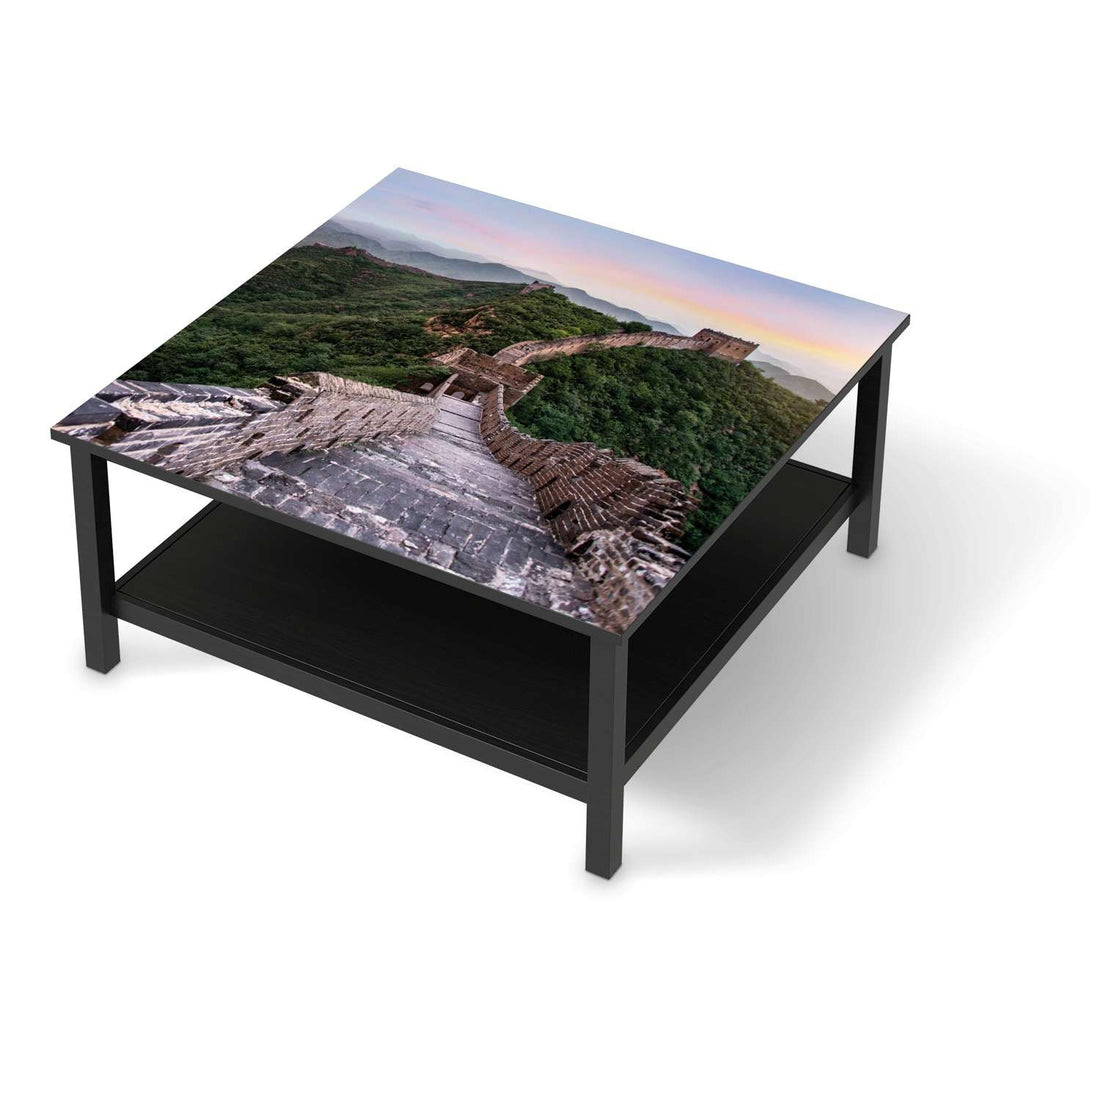 Klebefolie für Möbel The Great Wall - IKEA Hemnes Couchtisch 90x90 cm - schwarz